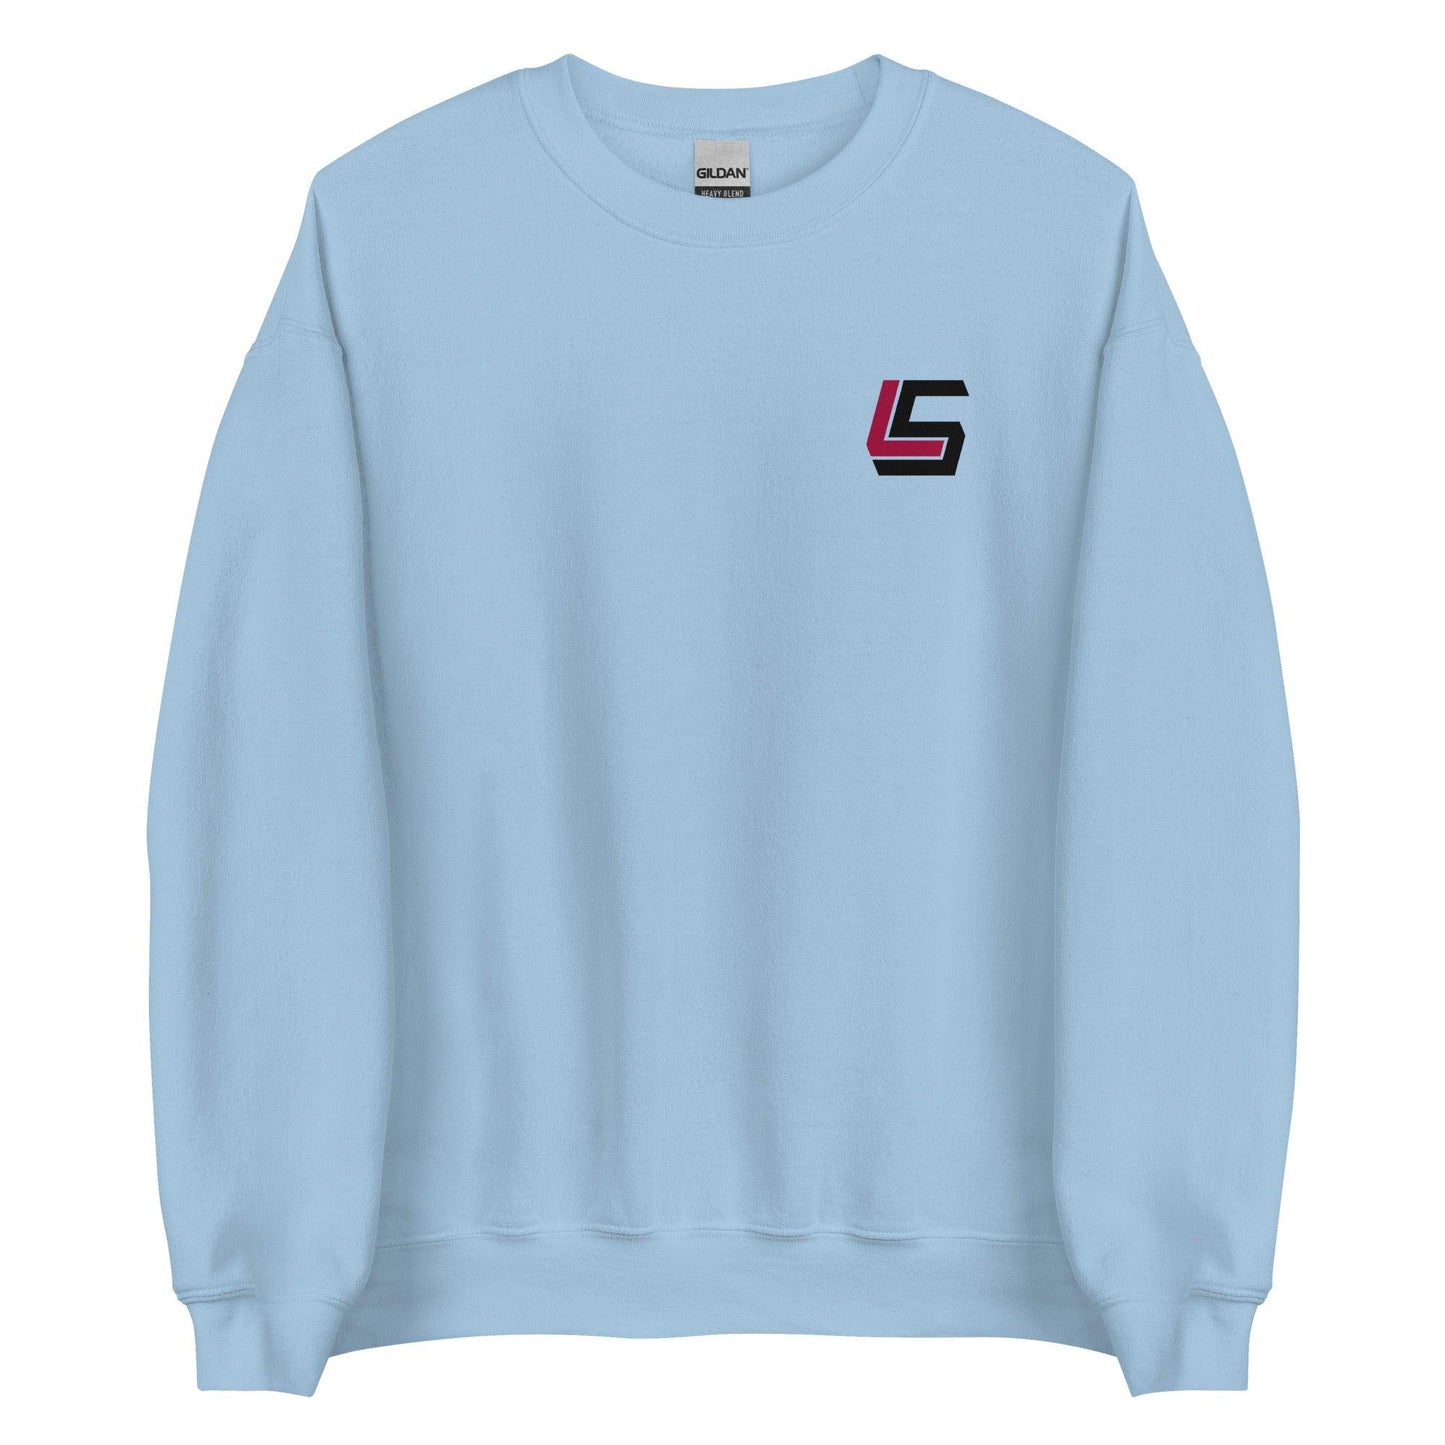 Lanorris Sellers "Essential" Sweatshirt - Fan Arch